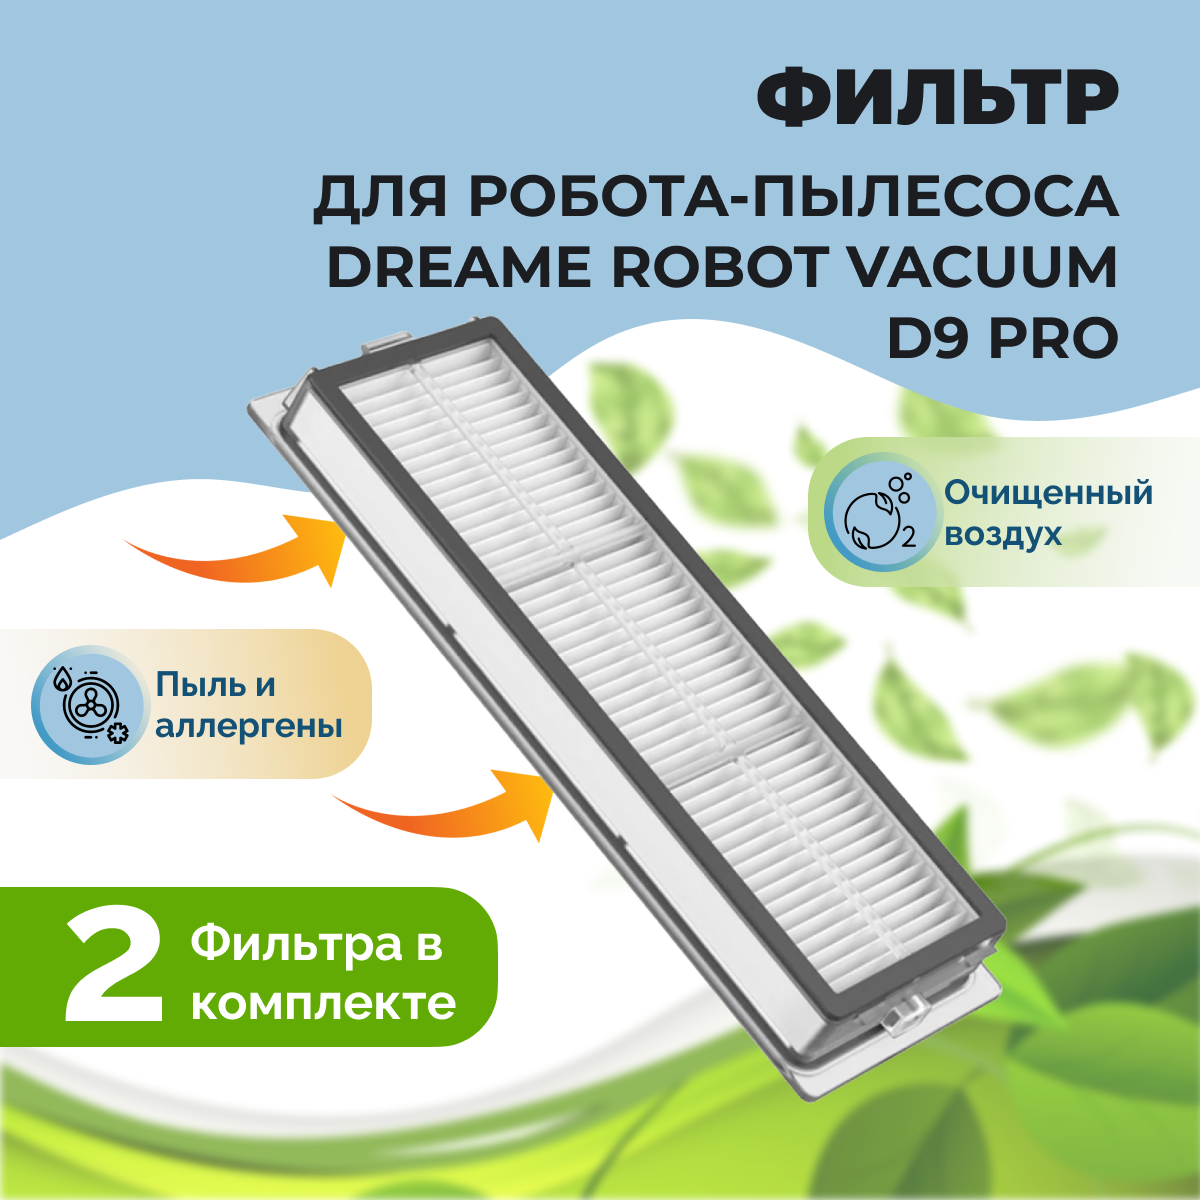 Фильтры для робота-пылесоса Dreame Robot Vacuum D9 Pro, 2 штуки 558102